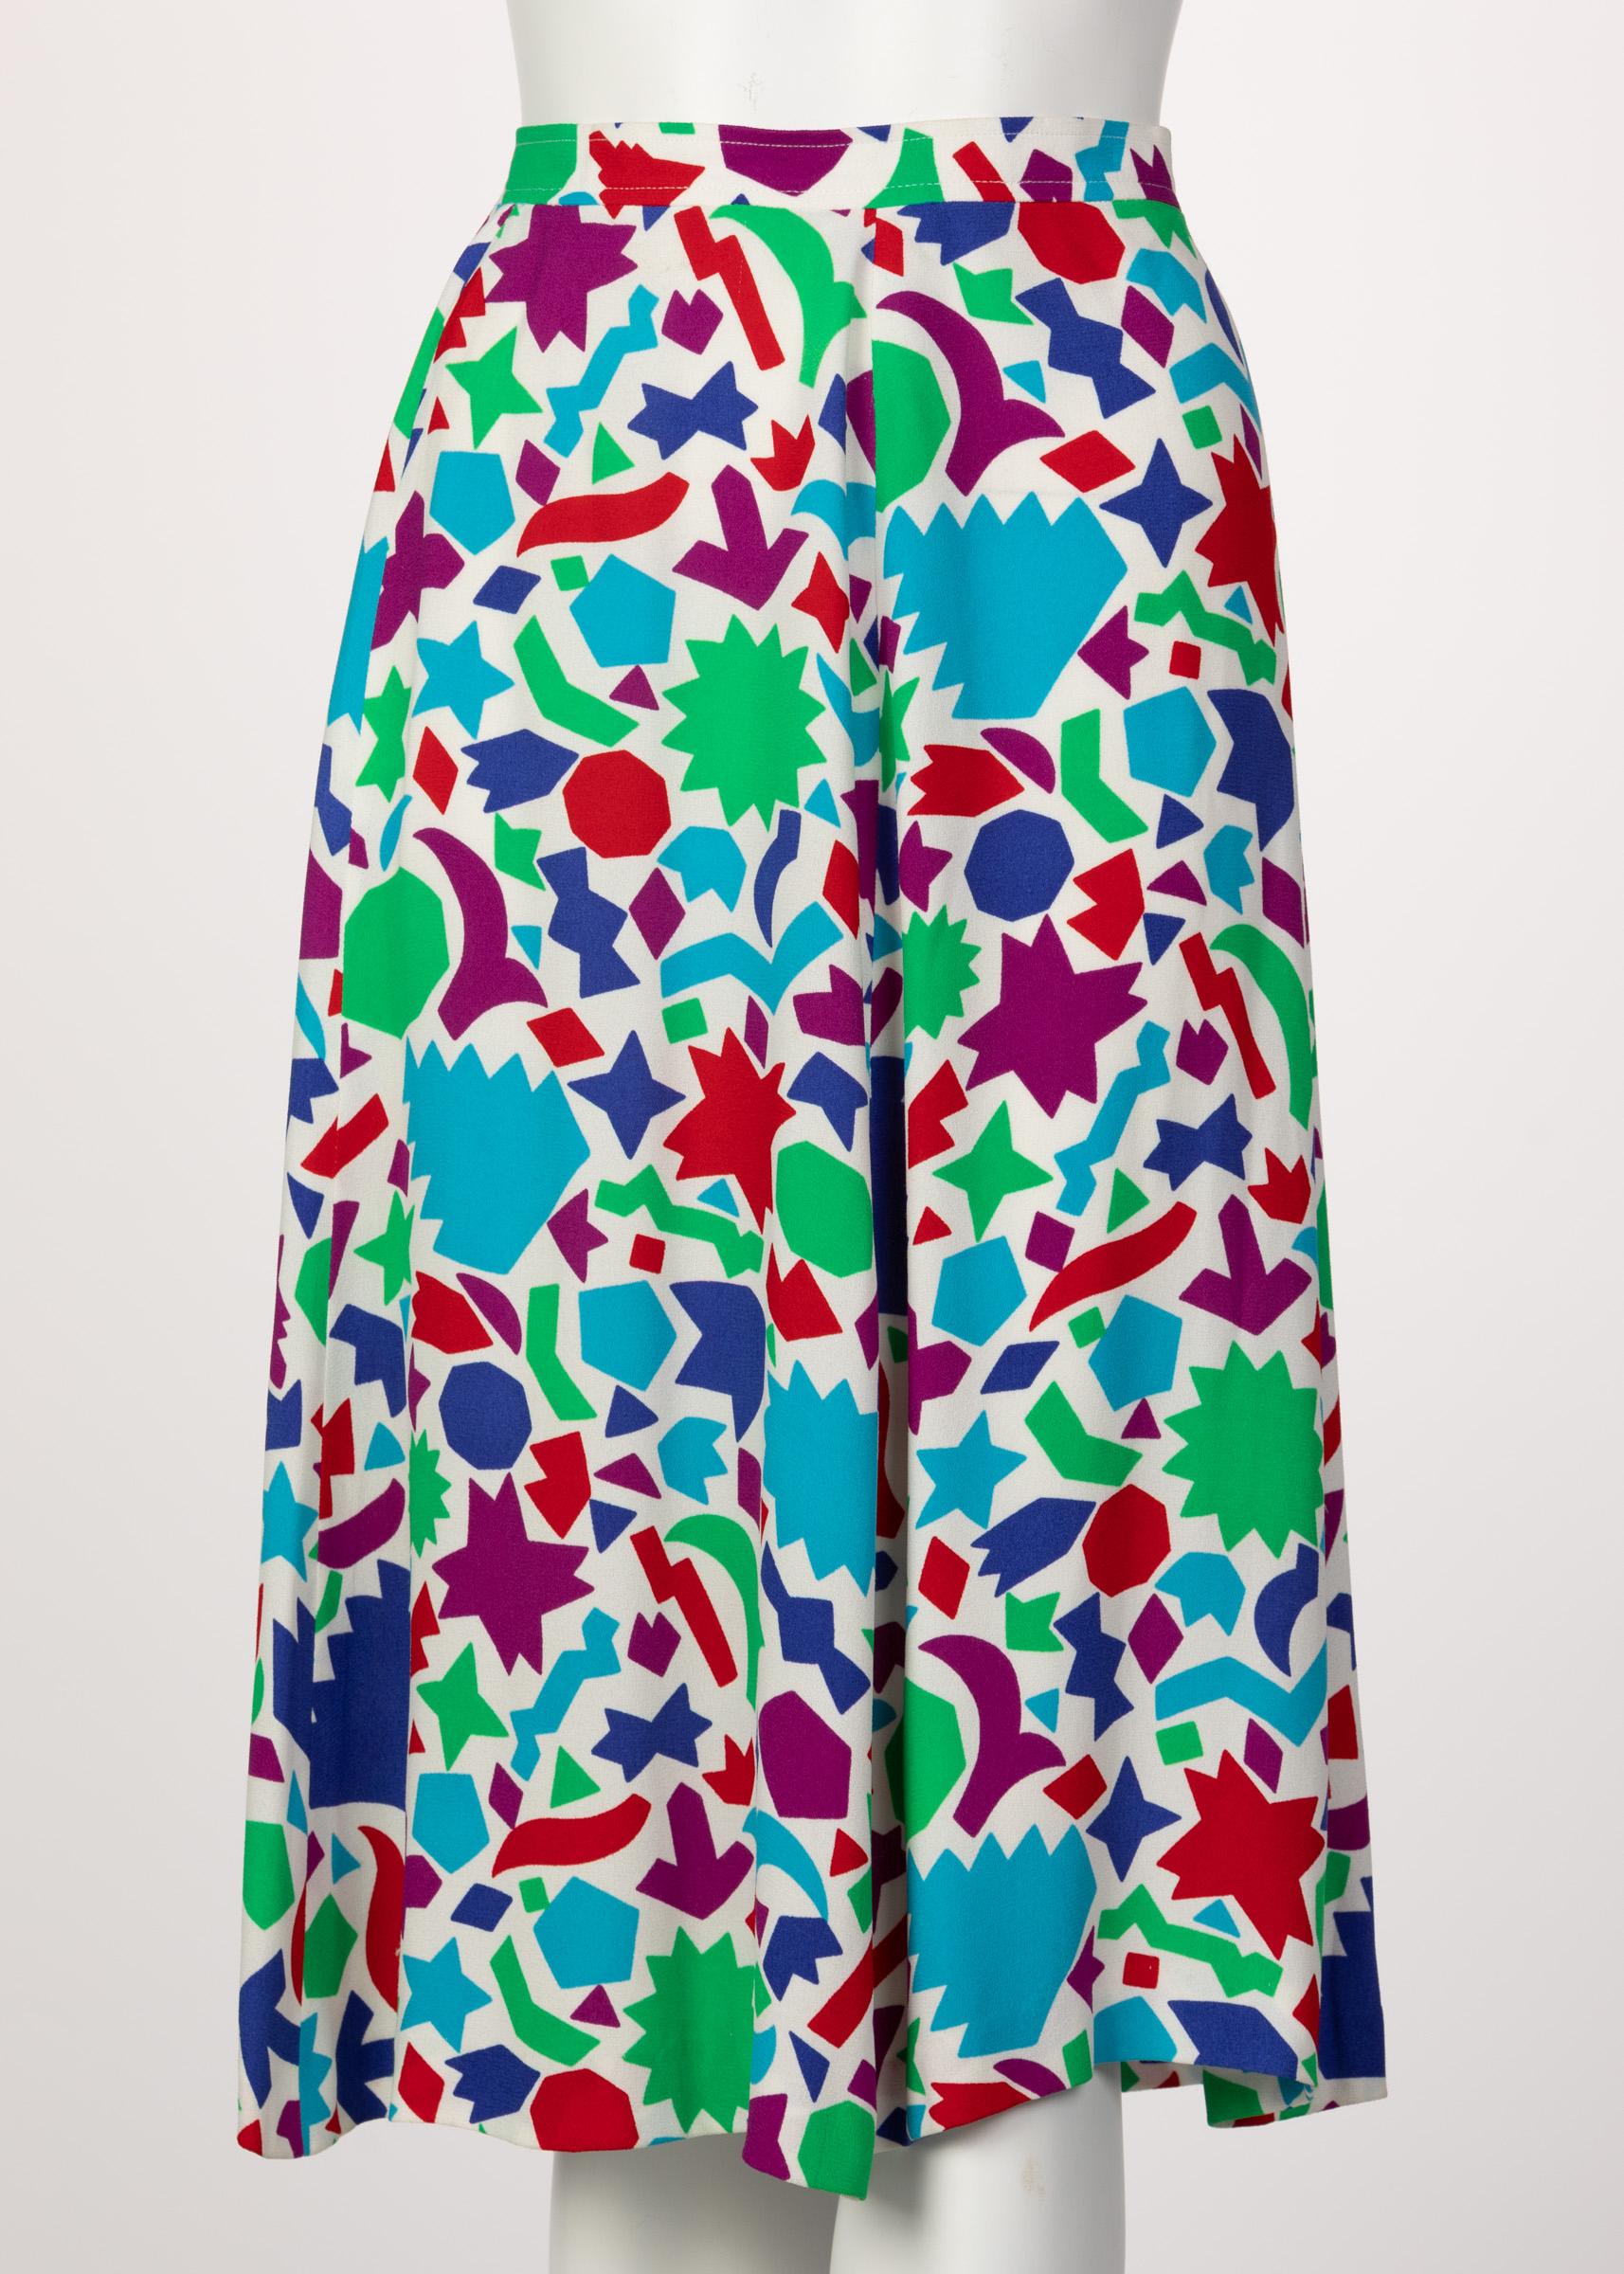 Gray Yves Saint Laurent Matisse Inspired Skirt